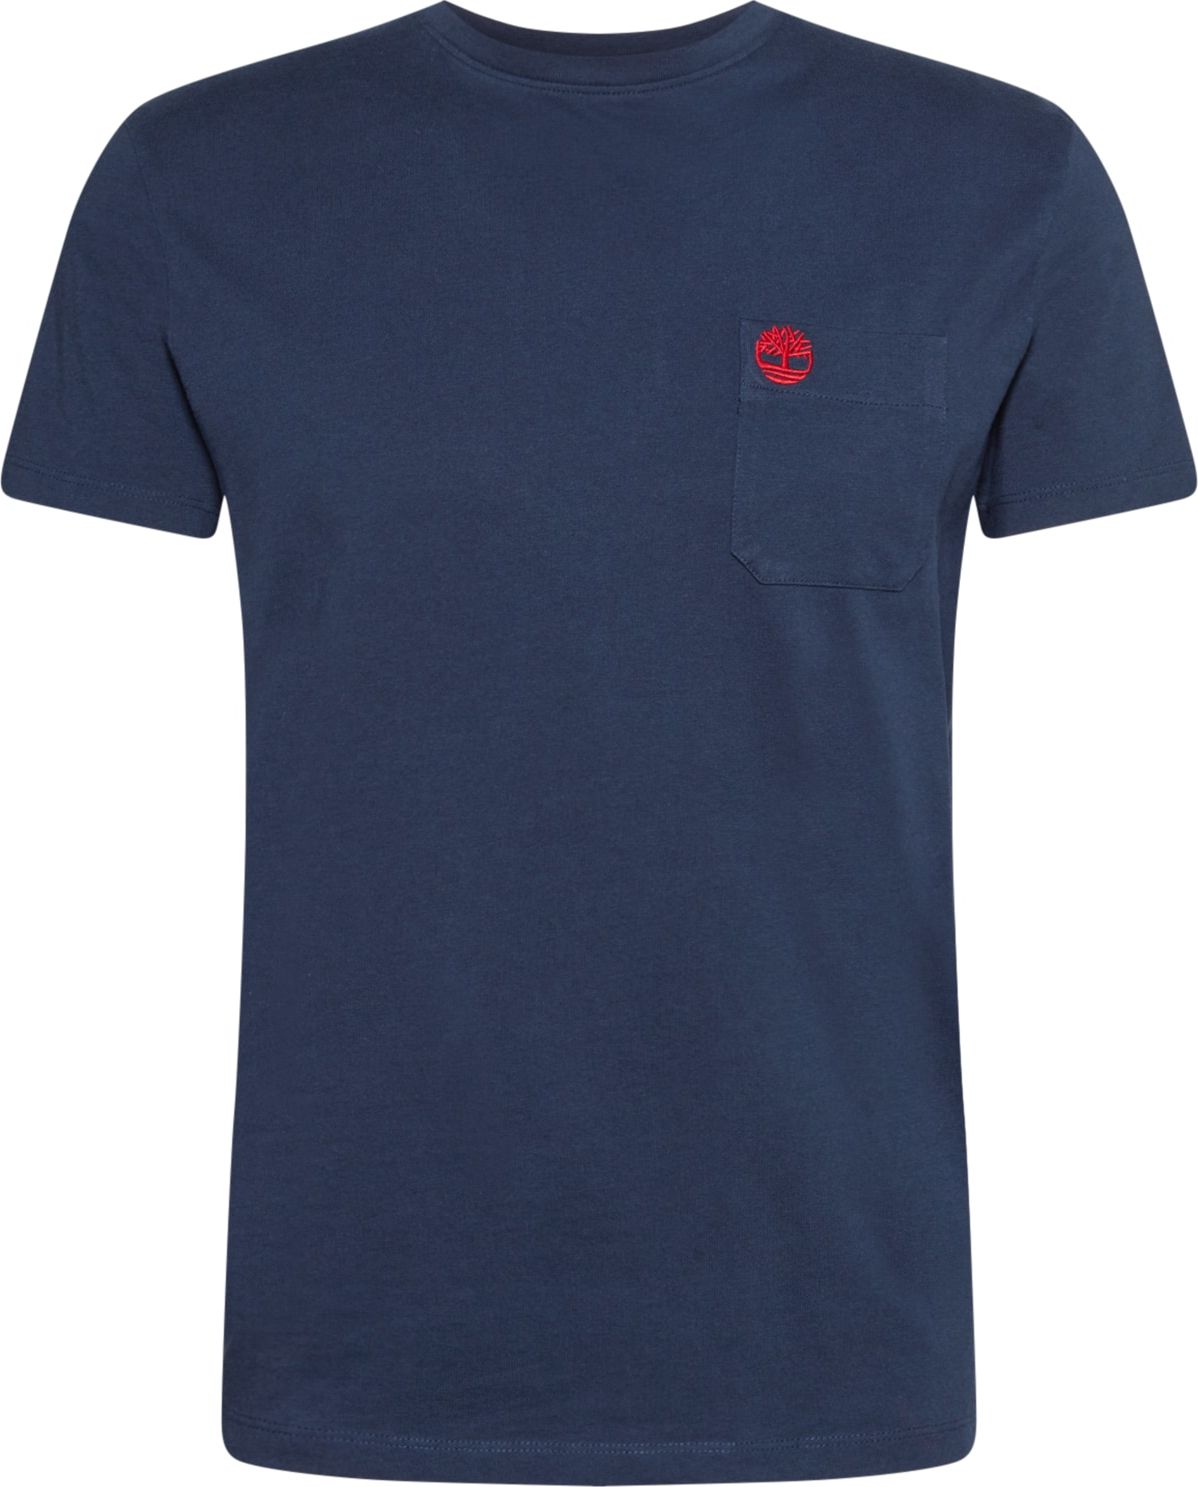 Tričko 'Dun-Riv' Timberland marine modrá / červená